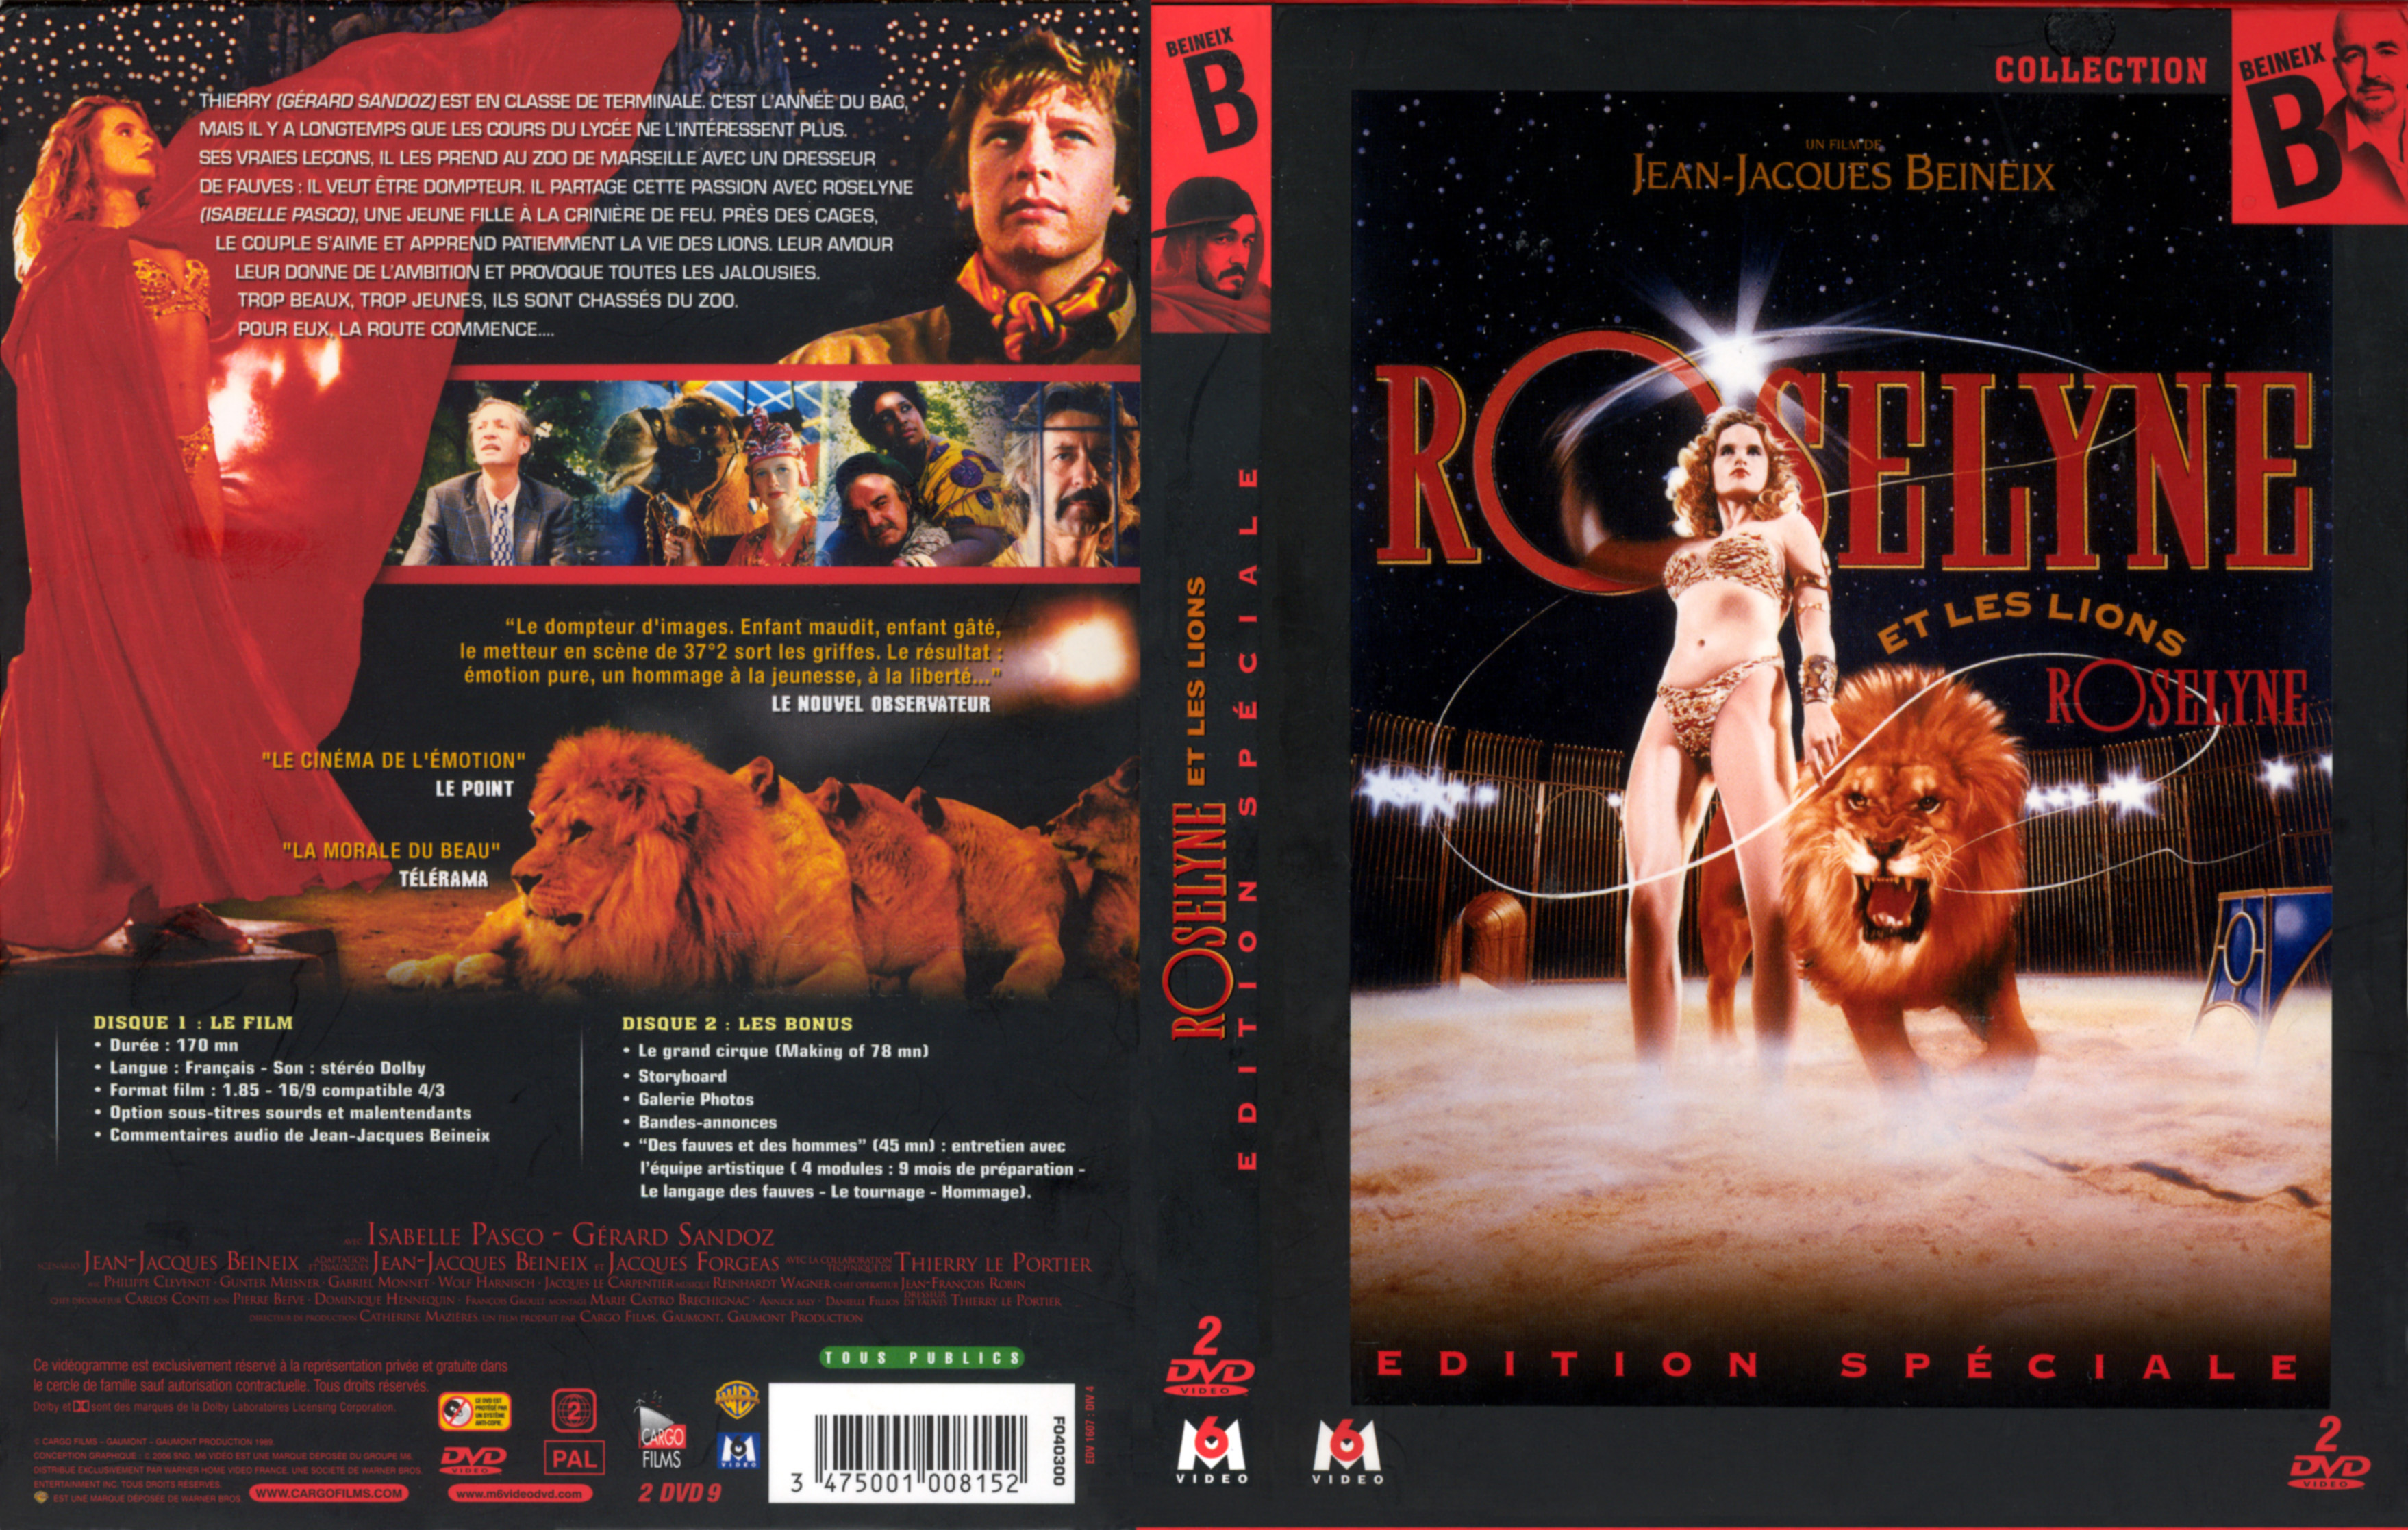 Jaquette DVD Roselyne et les lions